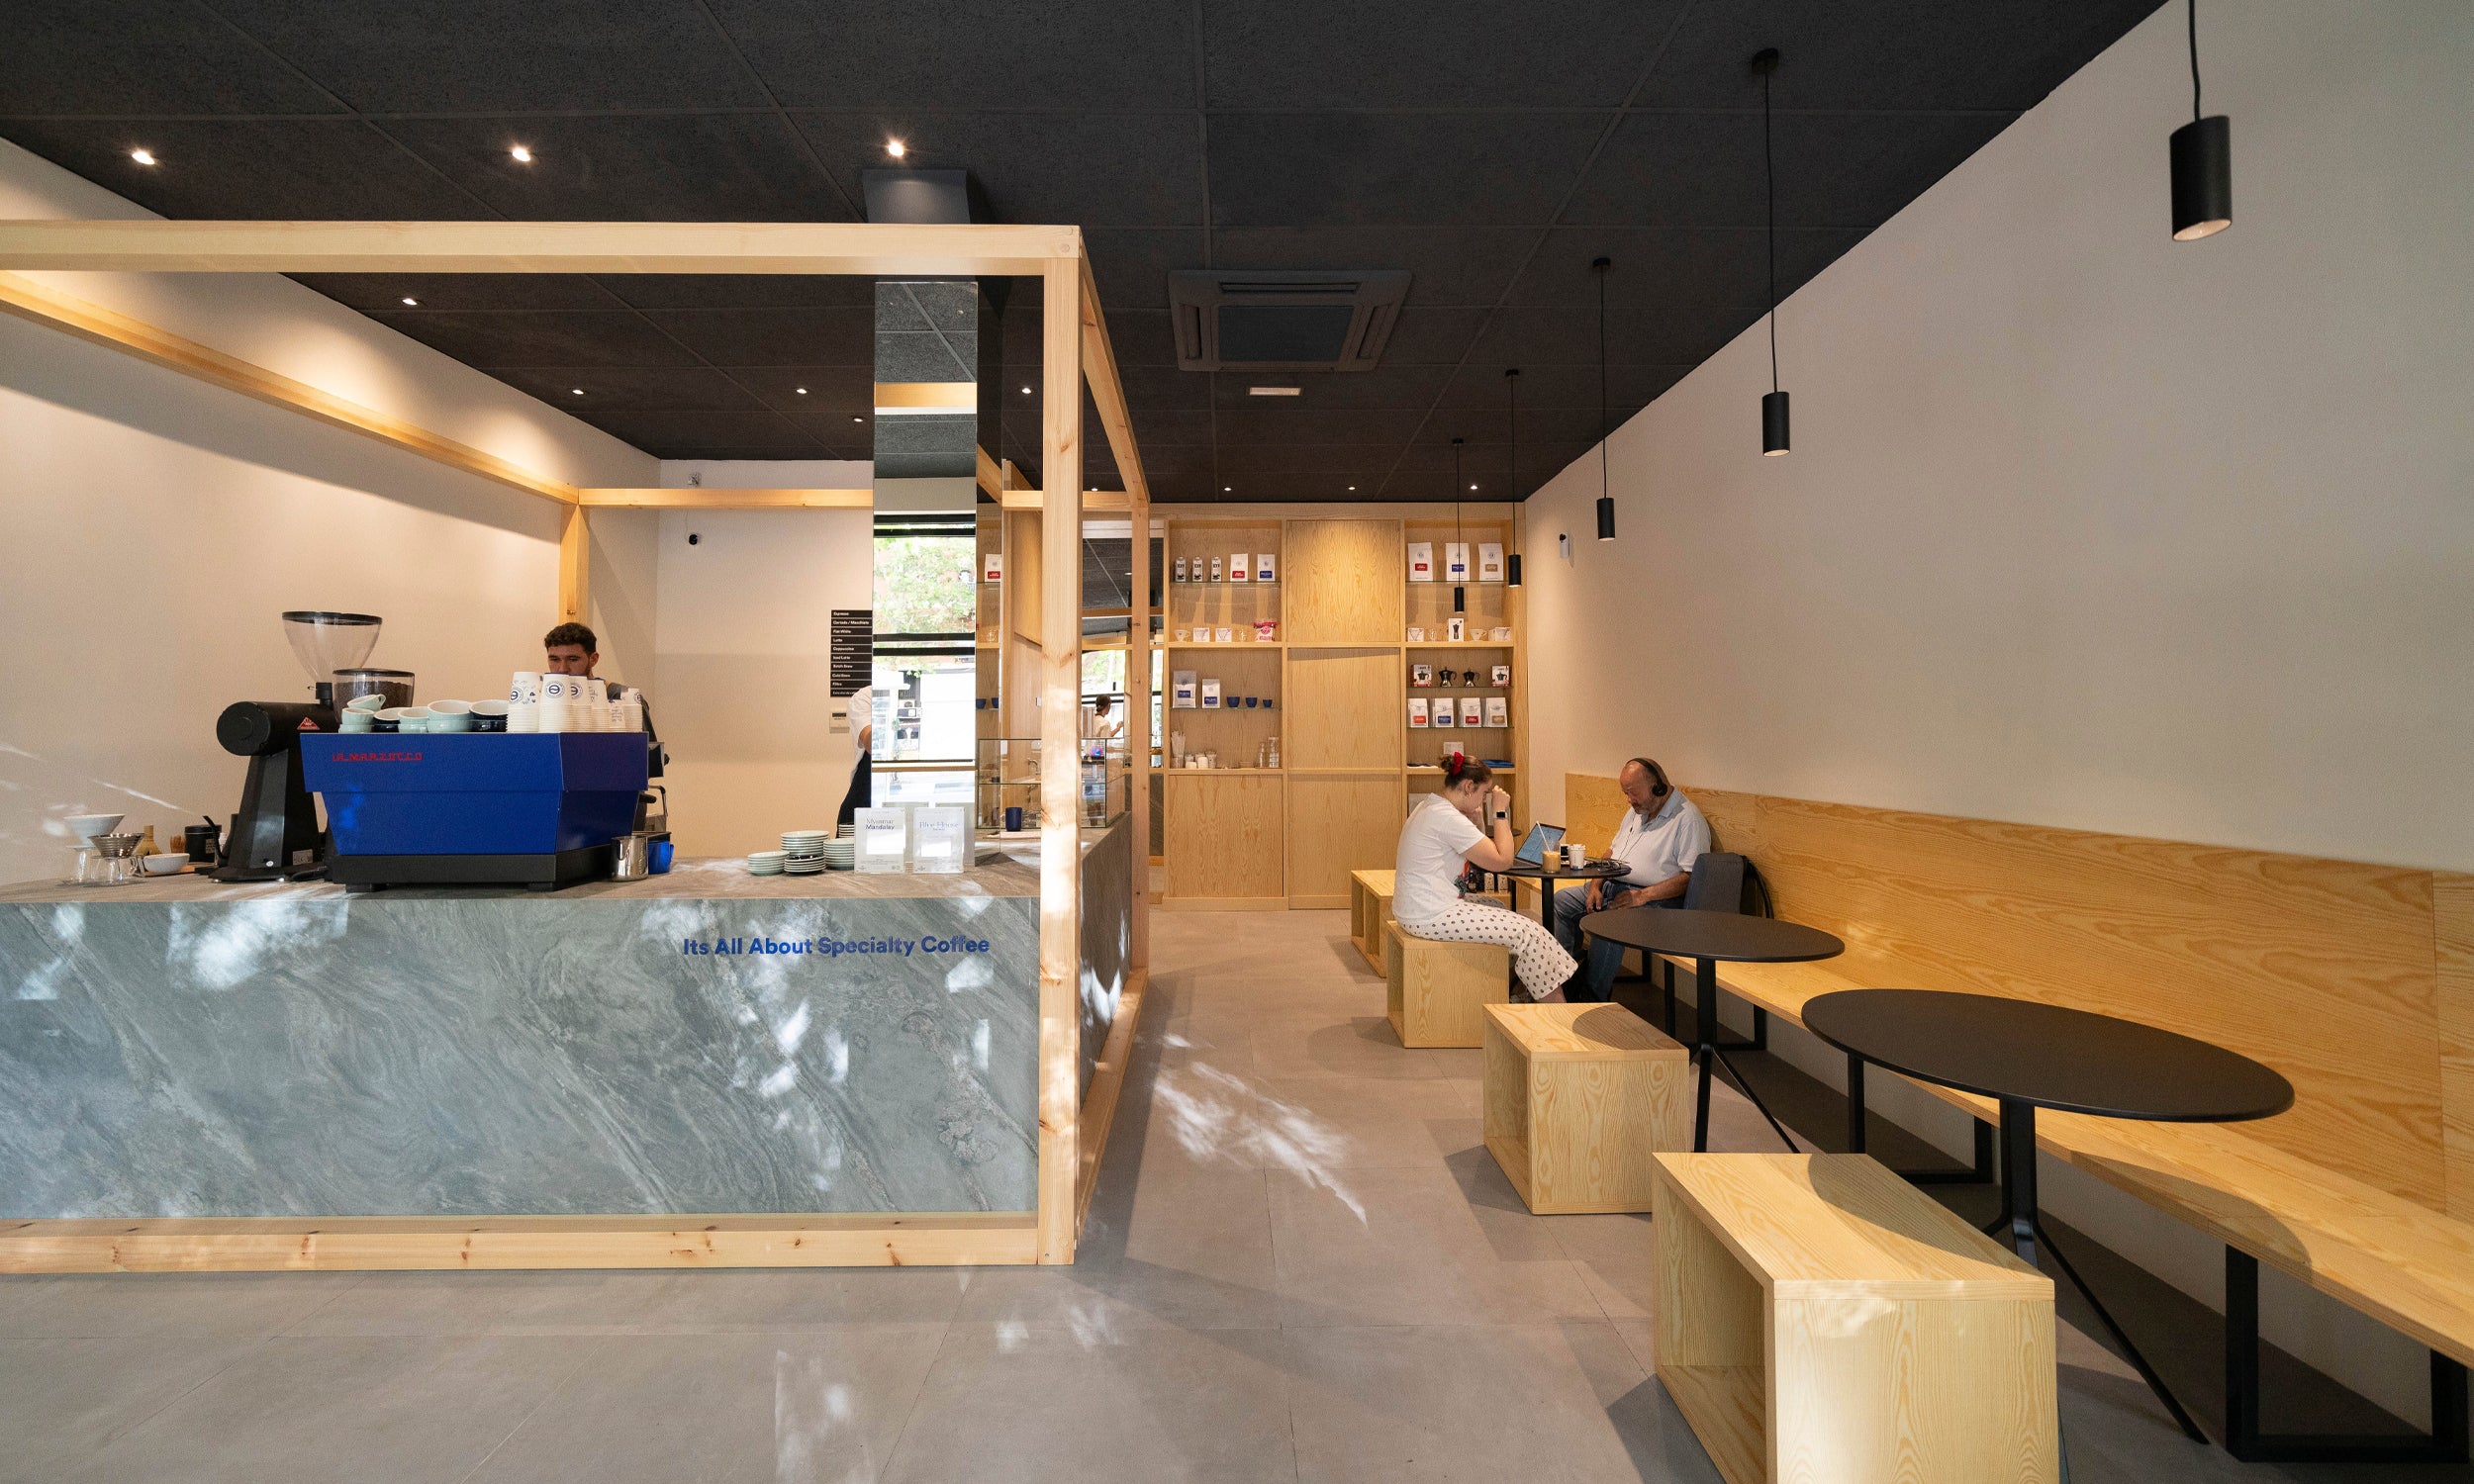 Nuevo Café de Especialidad en Madrid, en la calle Príncipe de Vergara